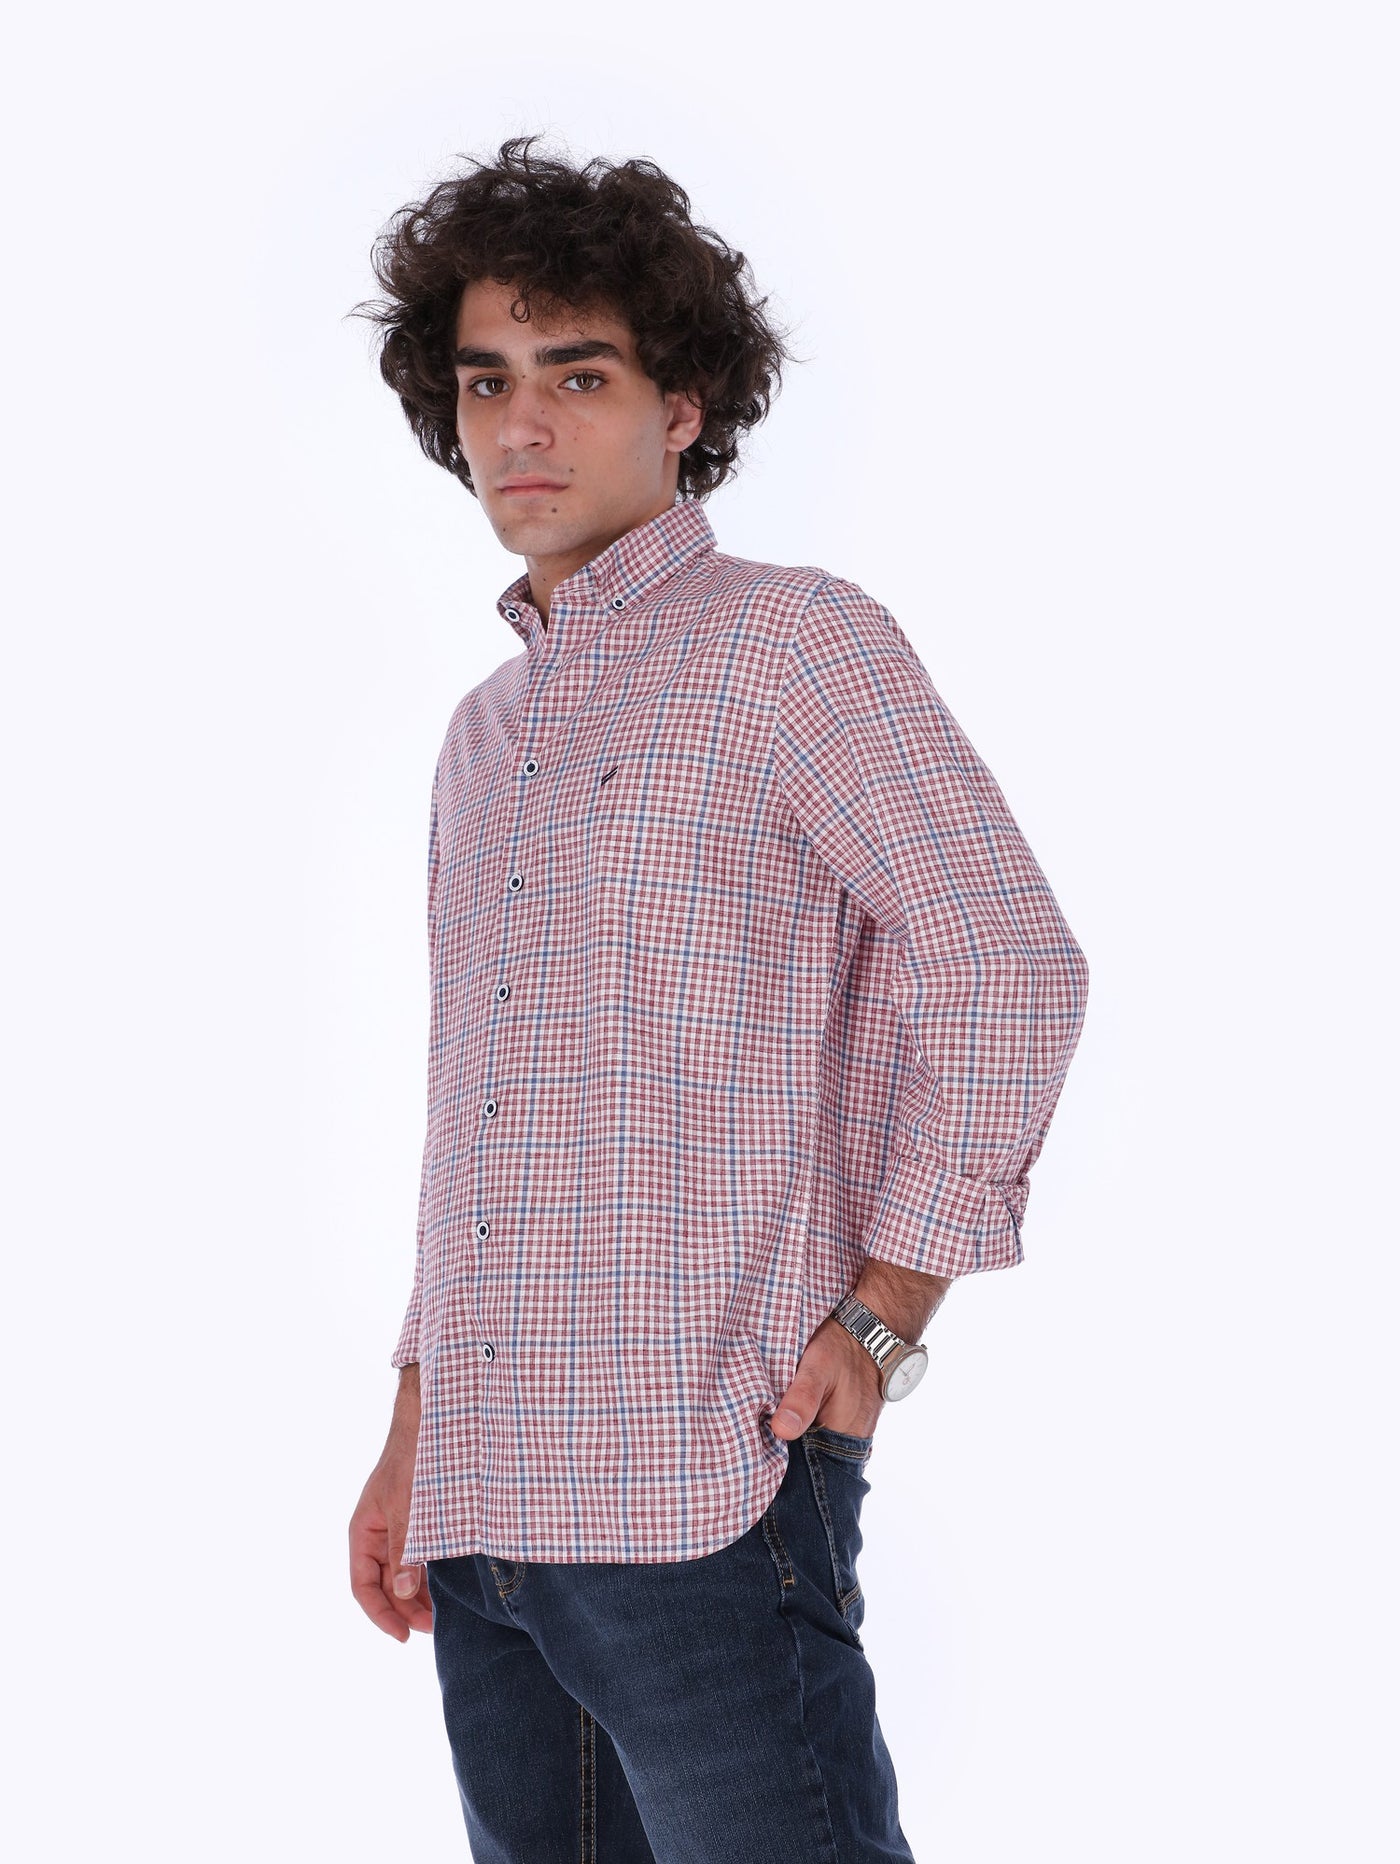 Daniel Hechter Men's Checkered Long Sleeve Shirt